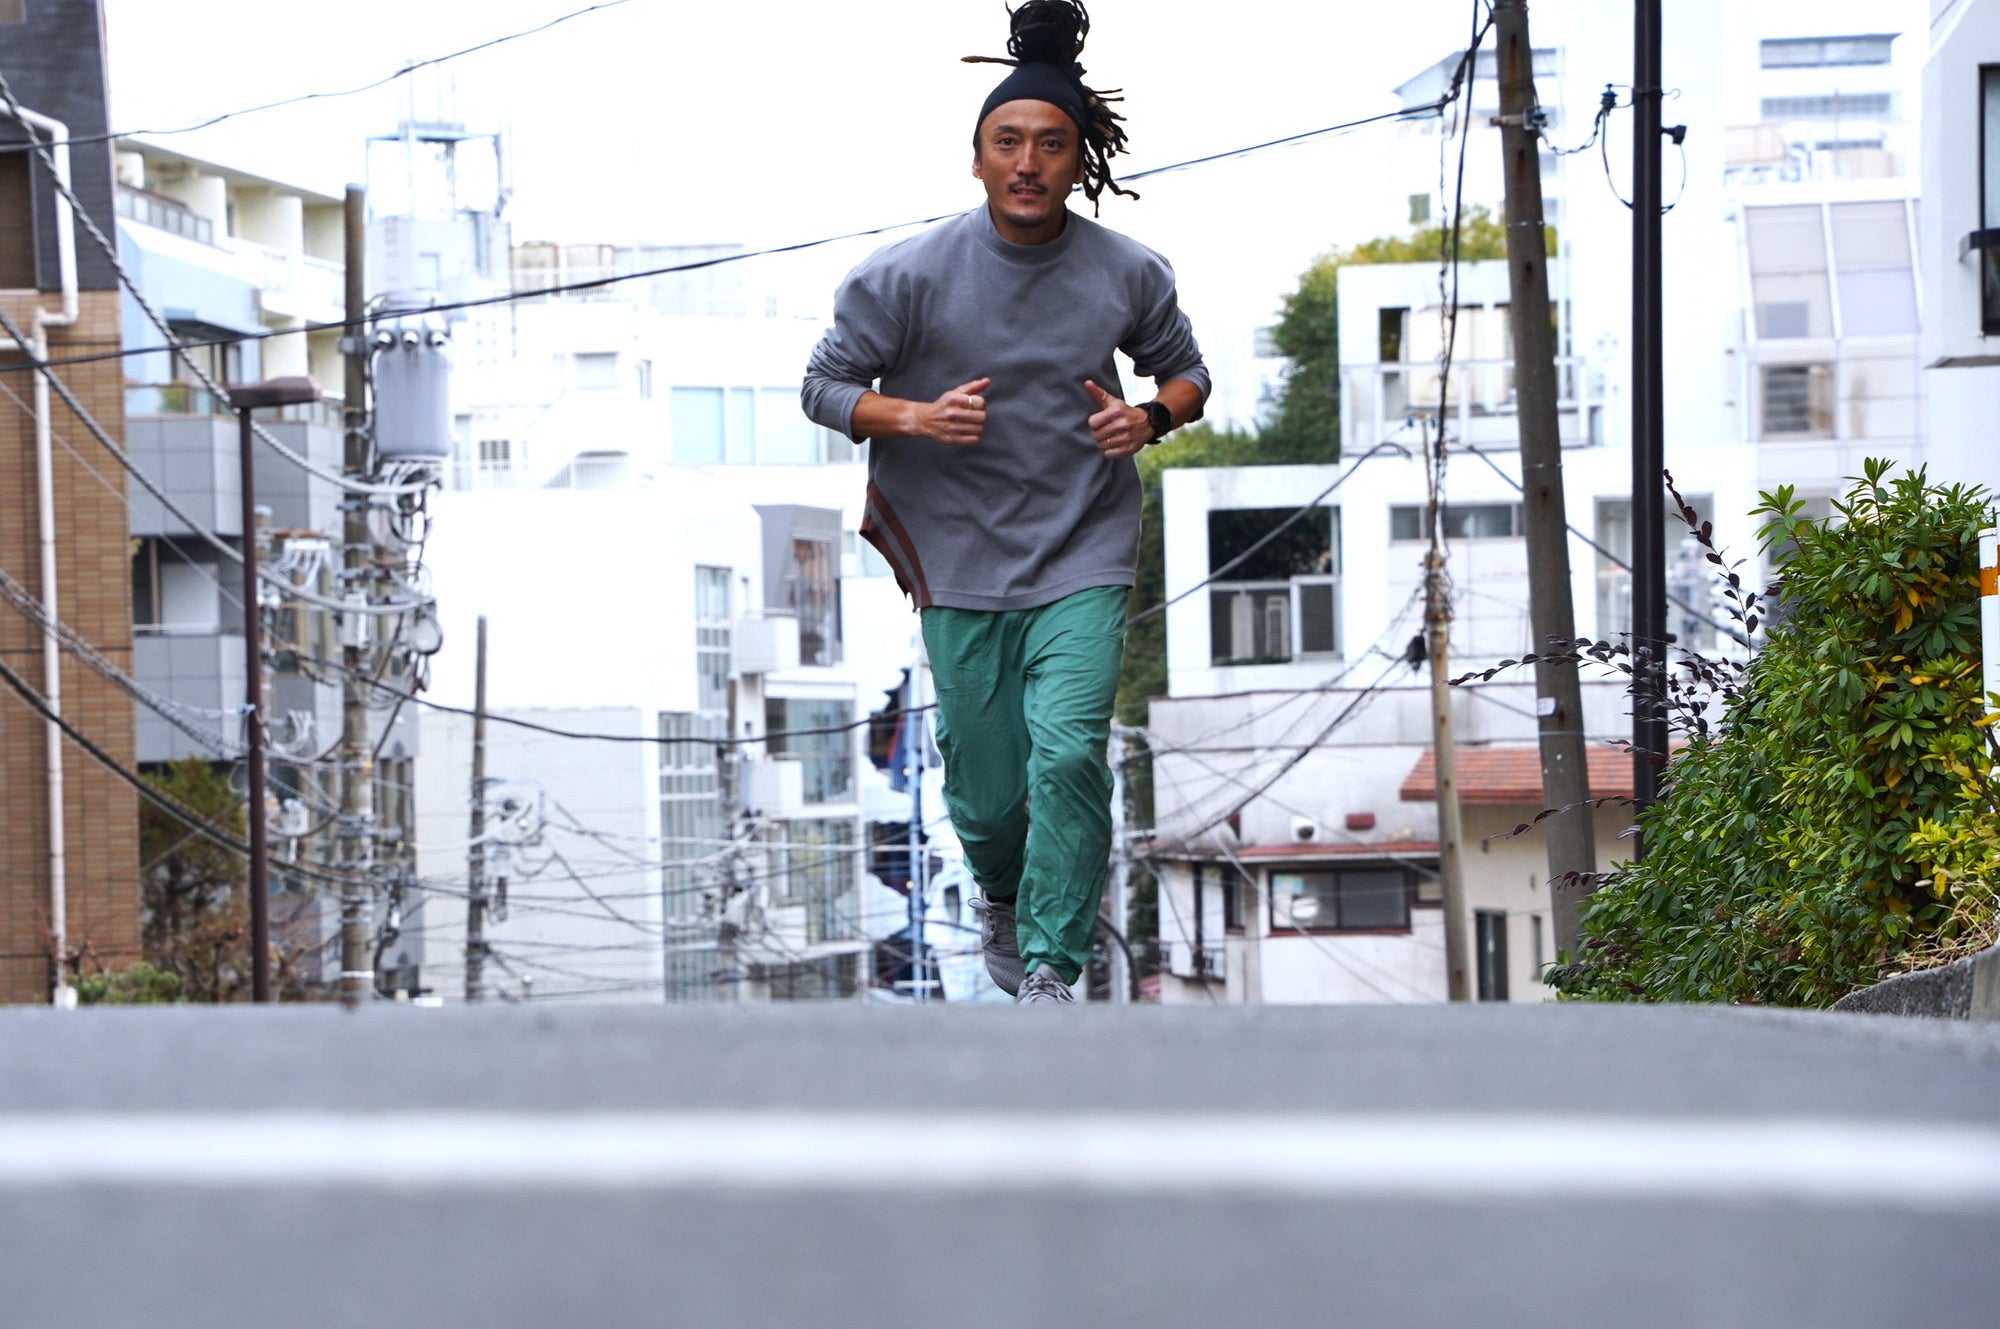 ユーザーインタビュー 藤川英樹さん「続けていれば、いつかとんでもない距離も走れるようになると思いますよ」